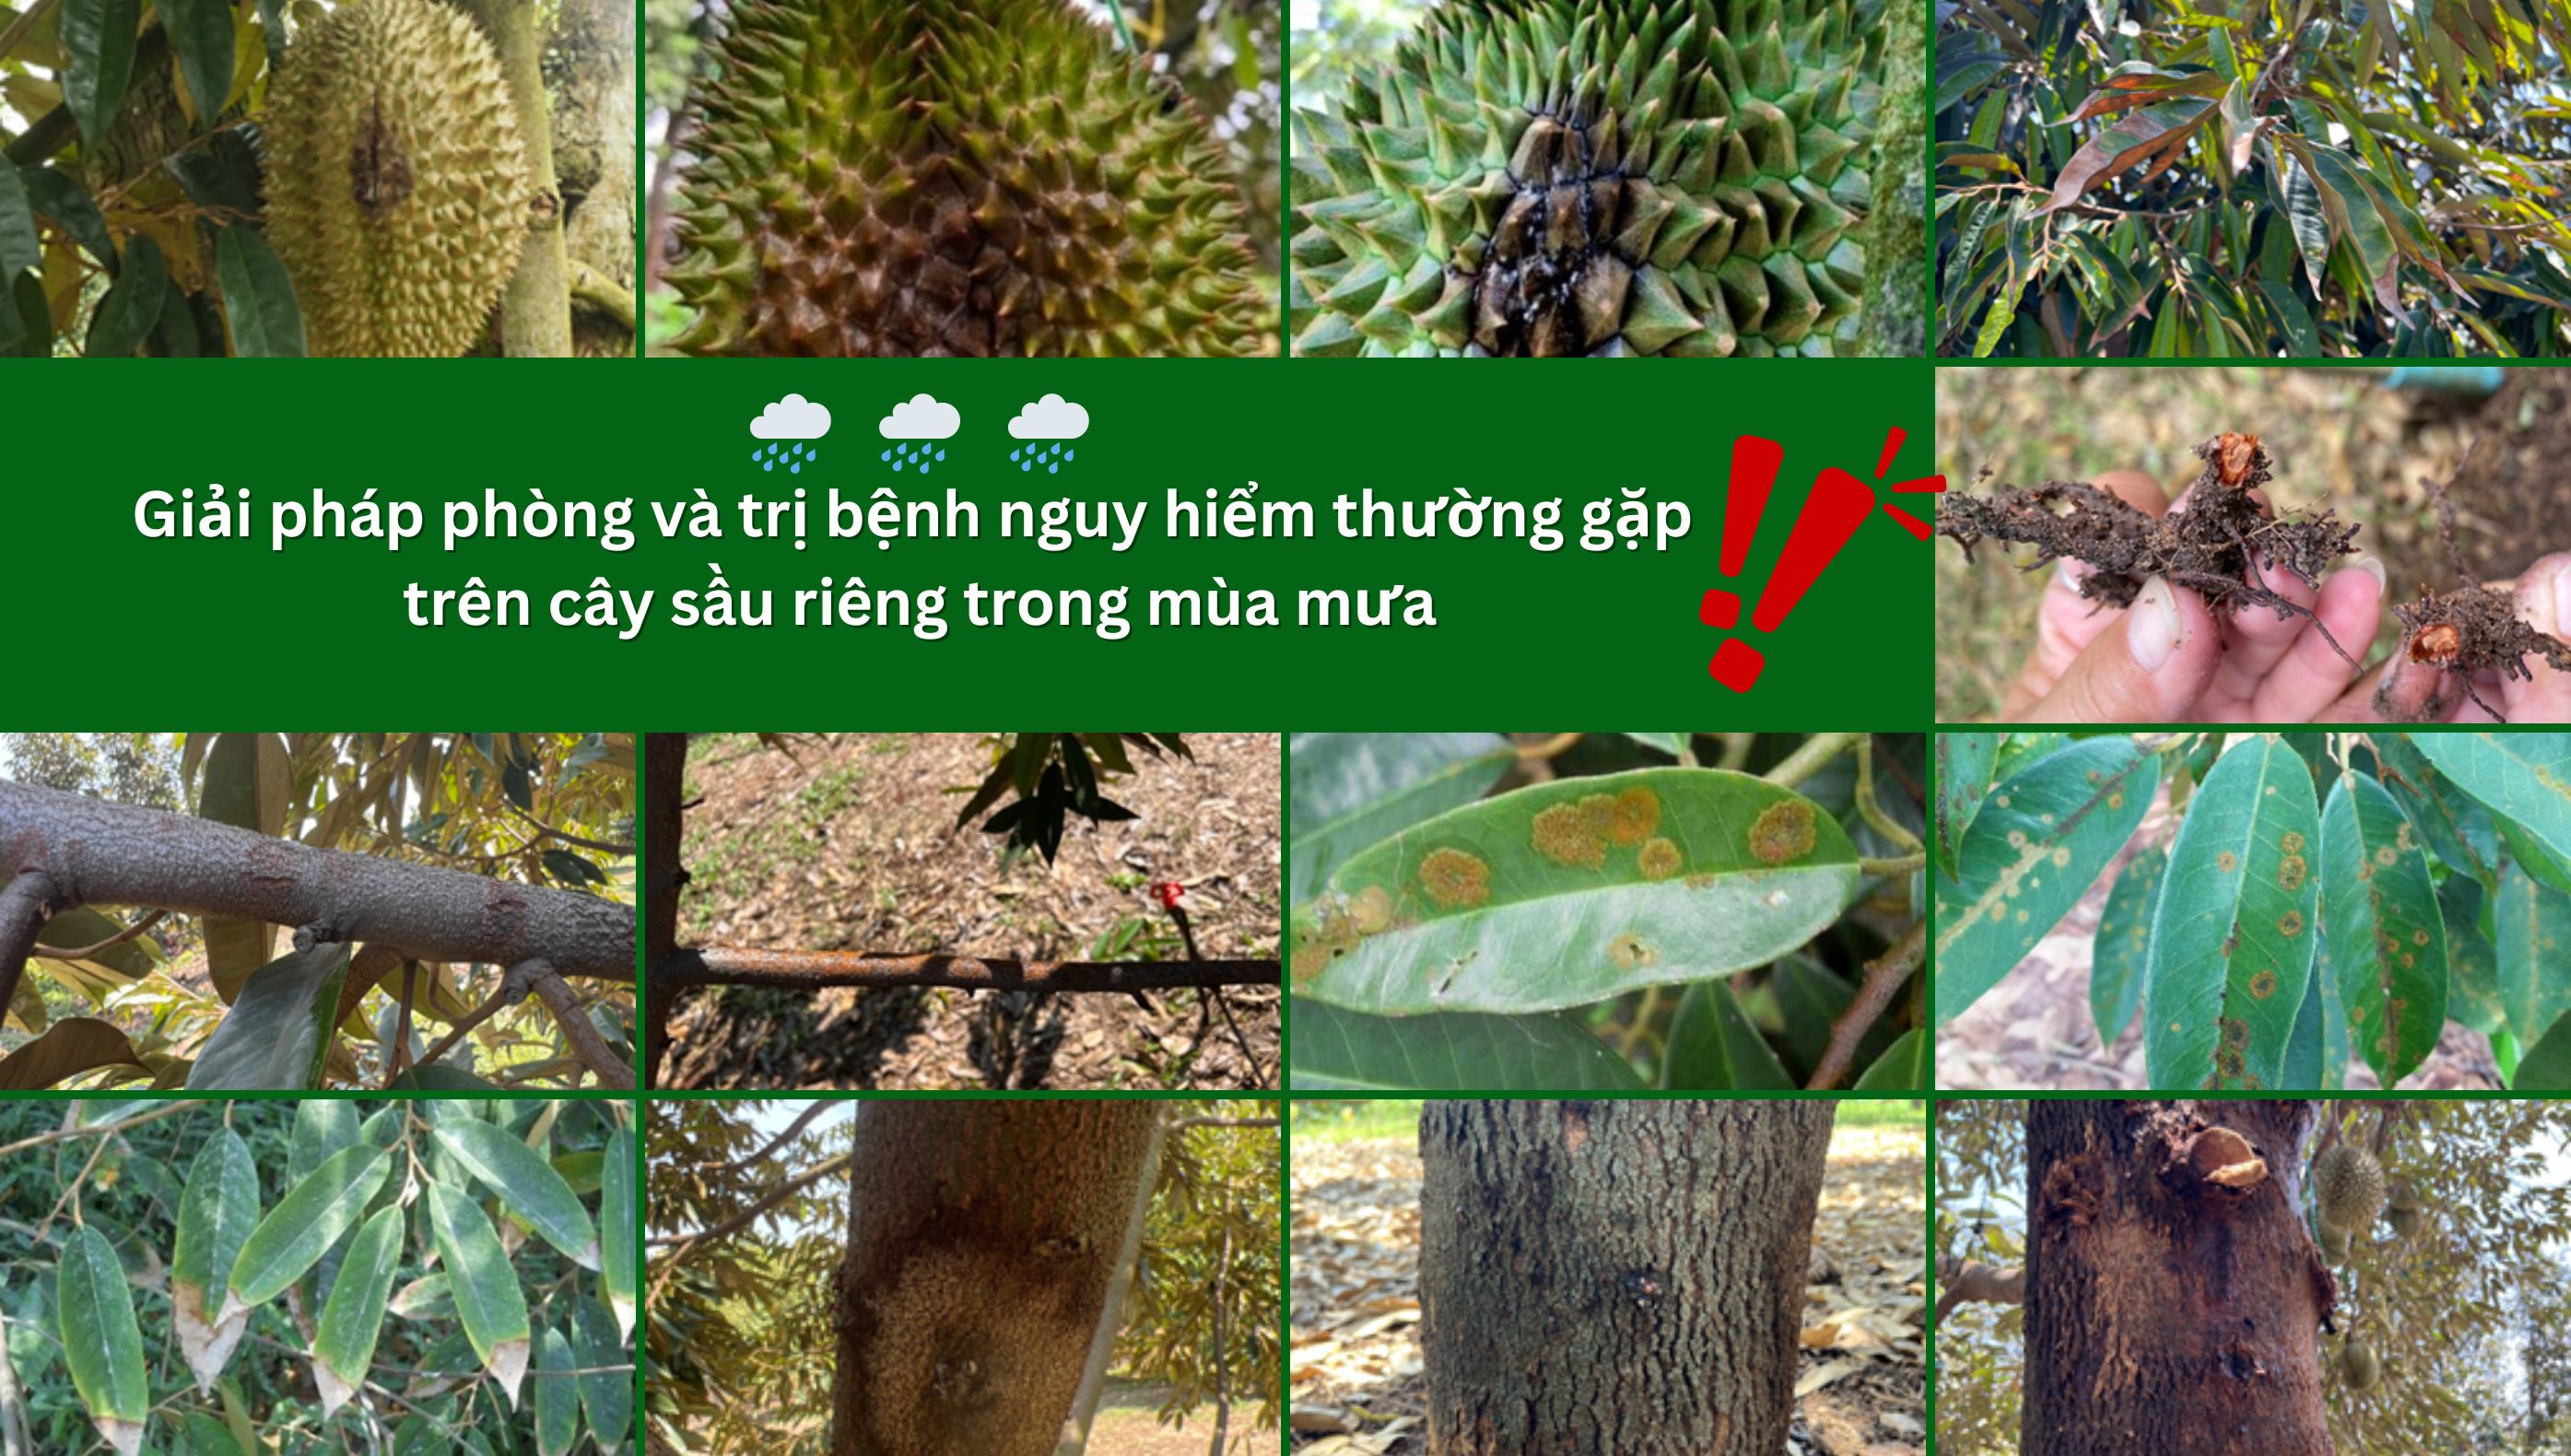 Giải pháp phòng và trị bệnh nguy hiểm thường gặp trên cây sầu riêng trong mùa mưa